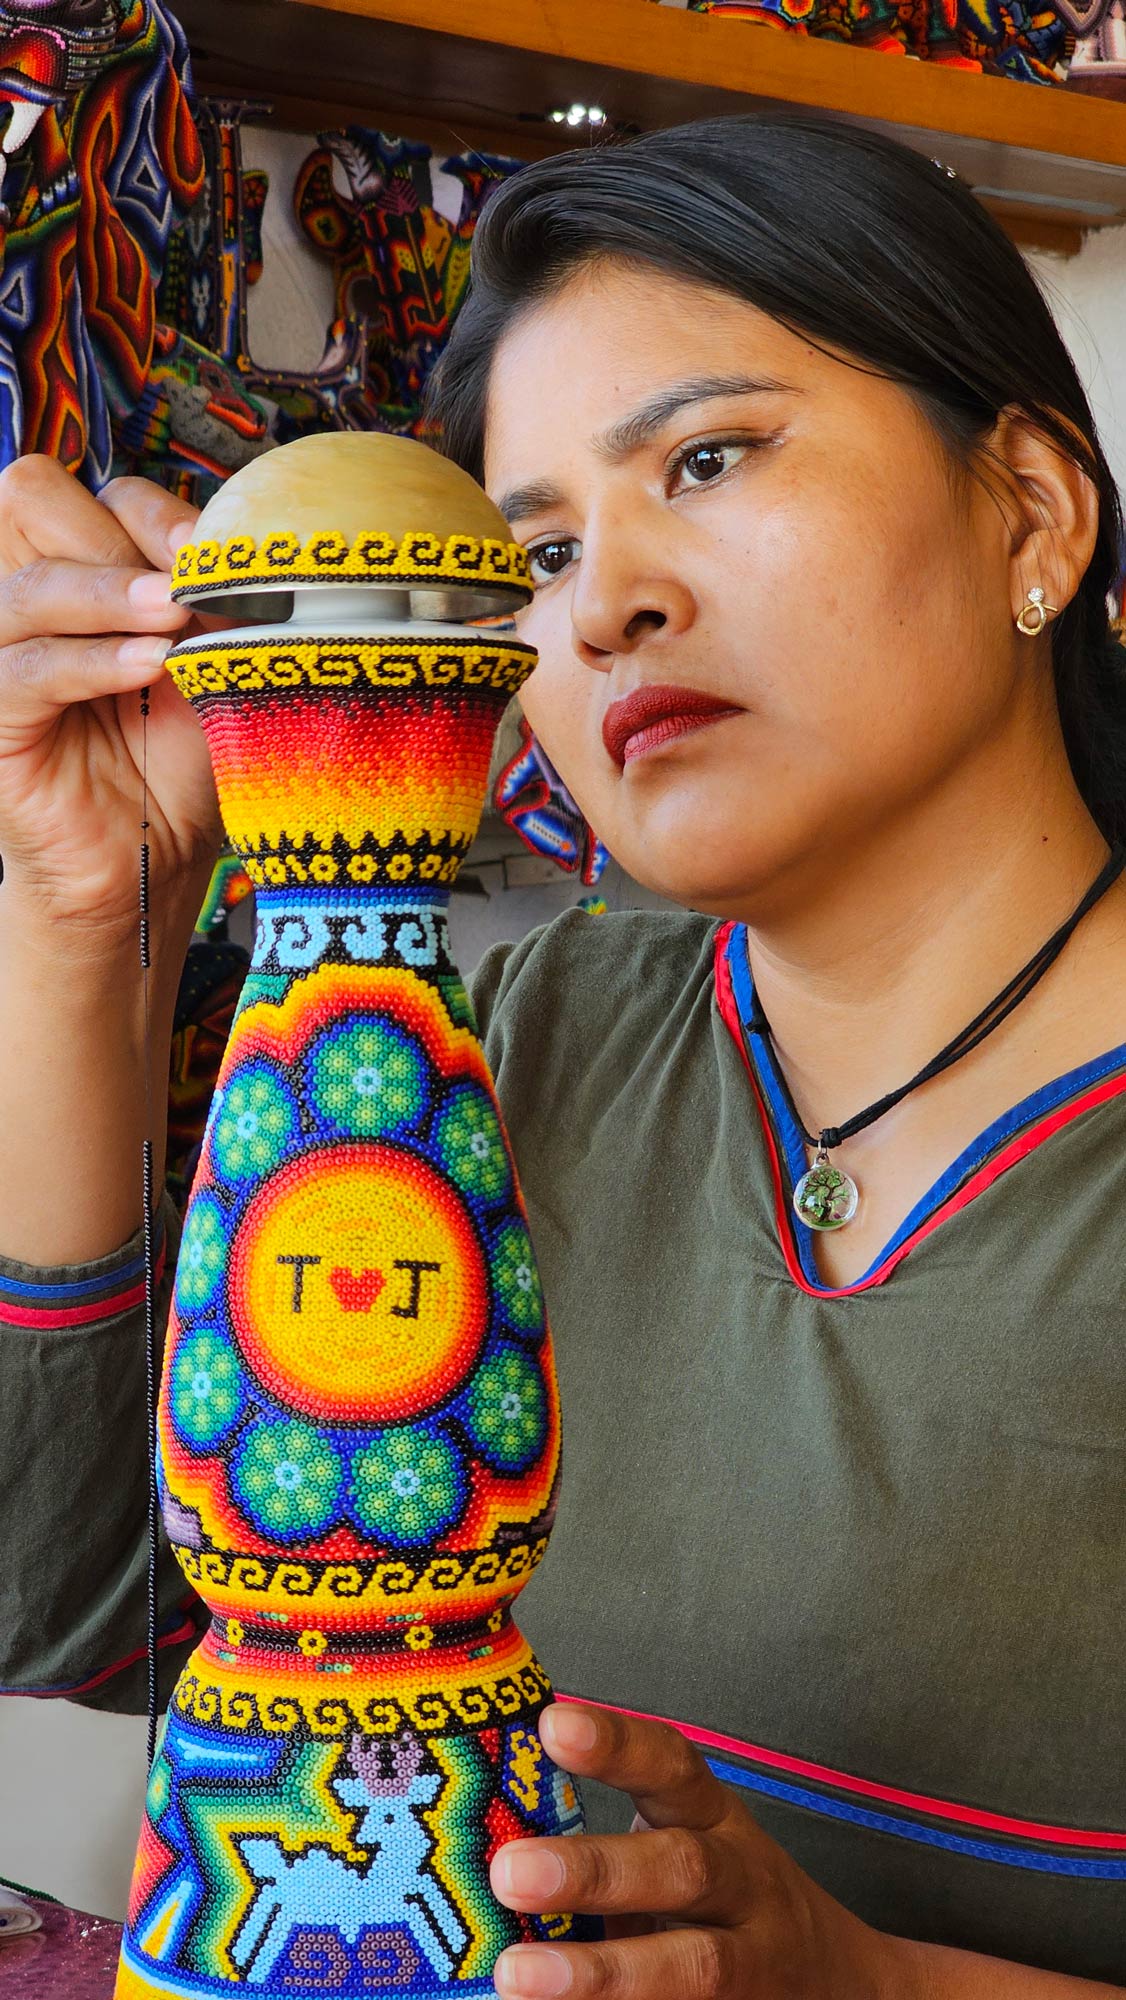 Mujer artesana huichol creando una artesania en un molde de botella de tequila co colores vividos y simbolos wixarikas